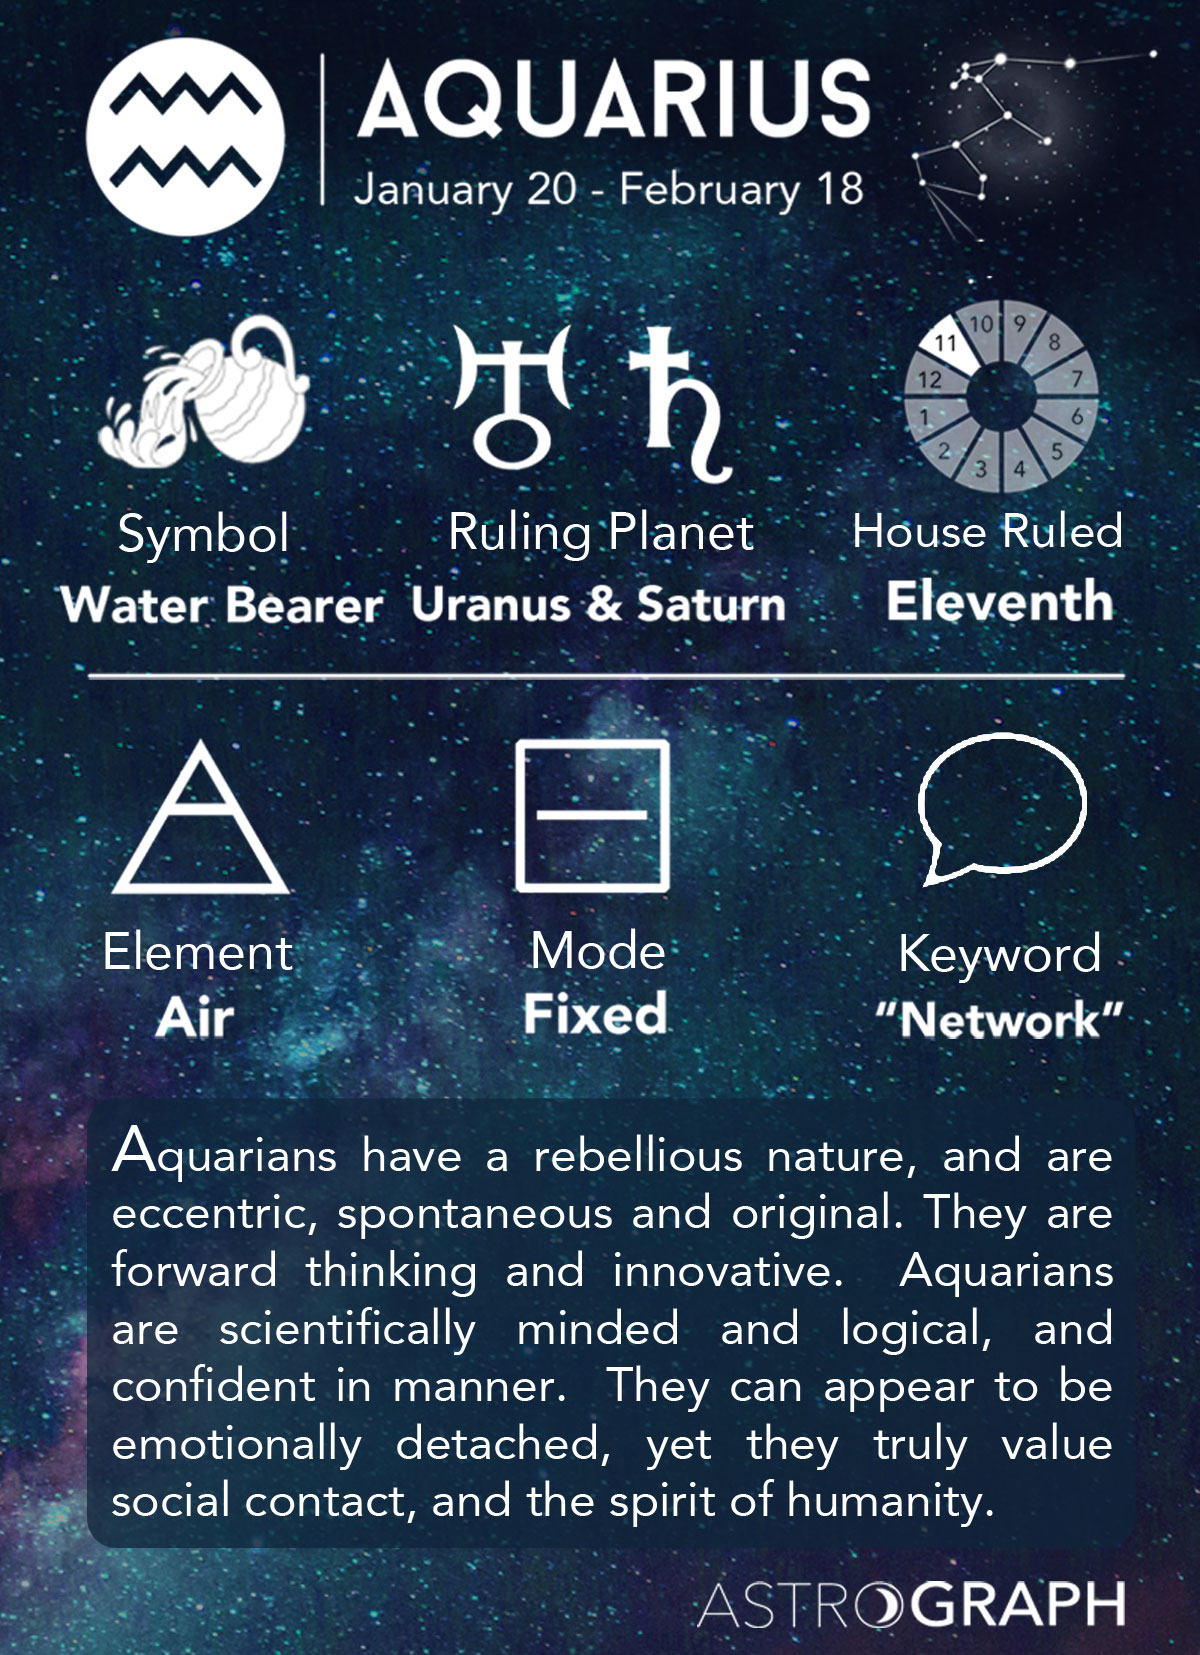 What Is Aquarius?